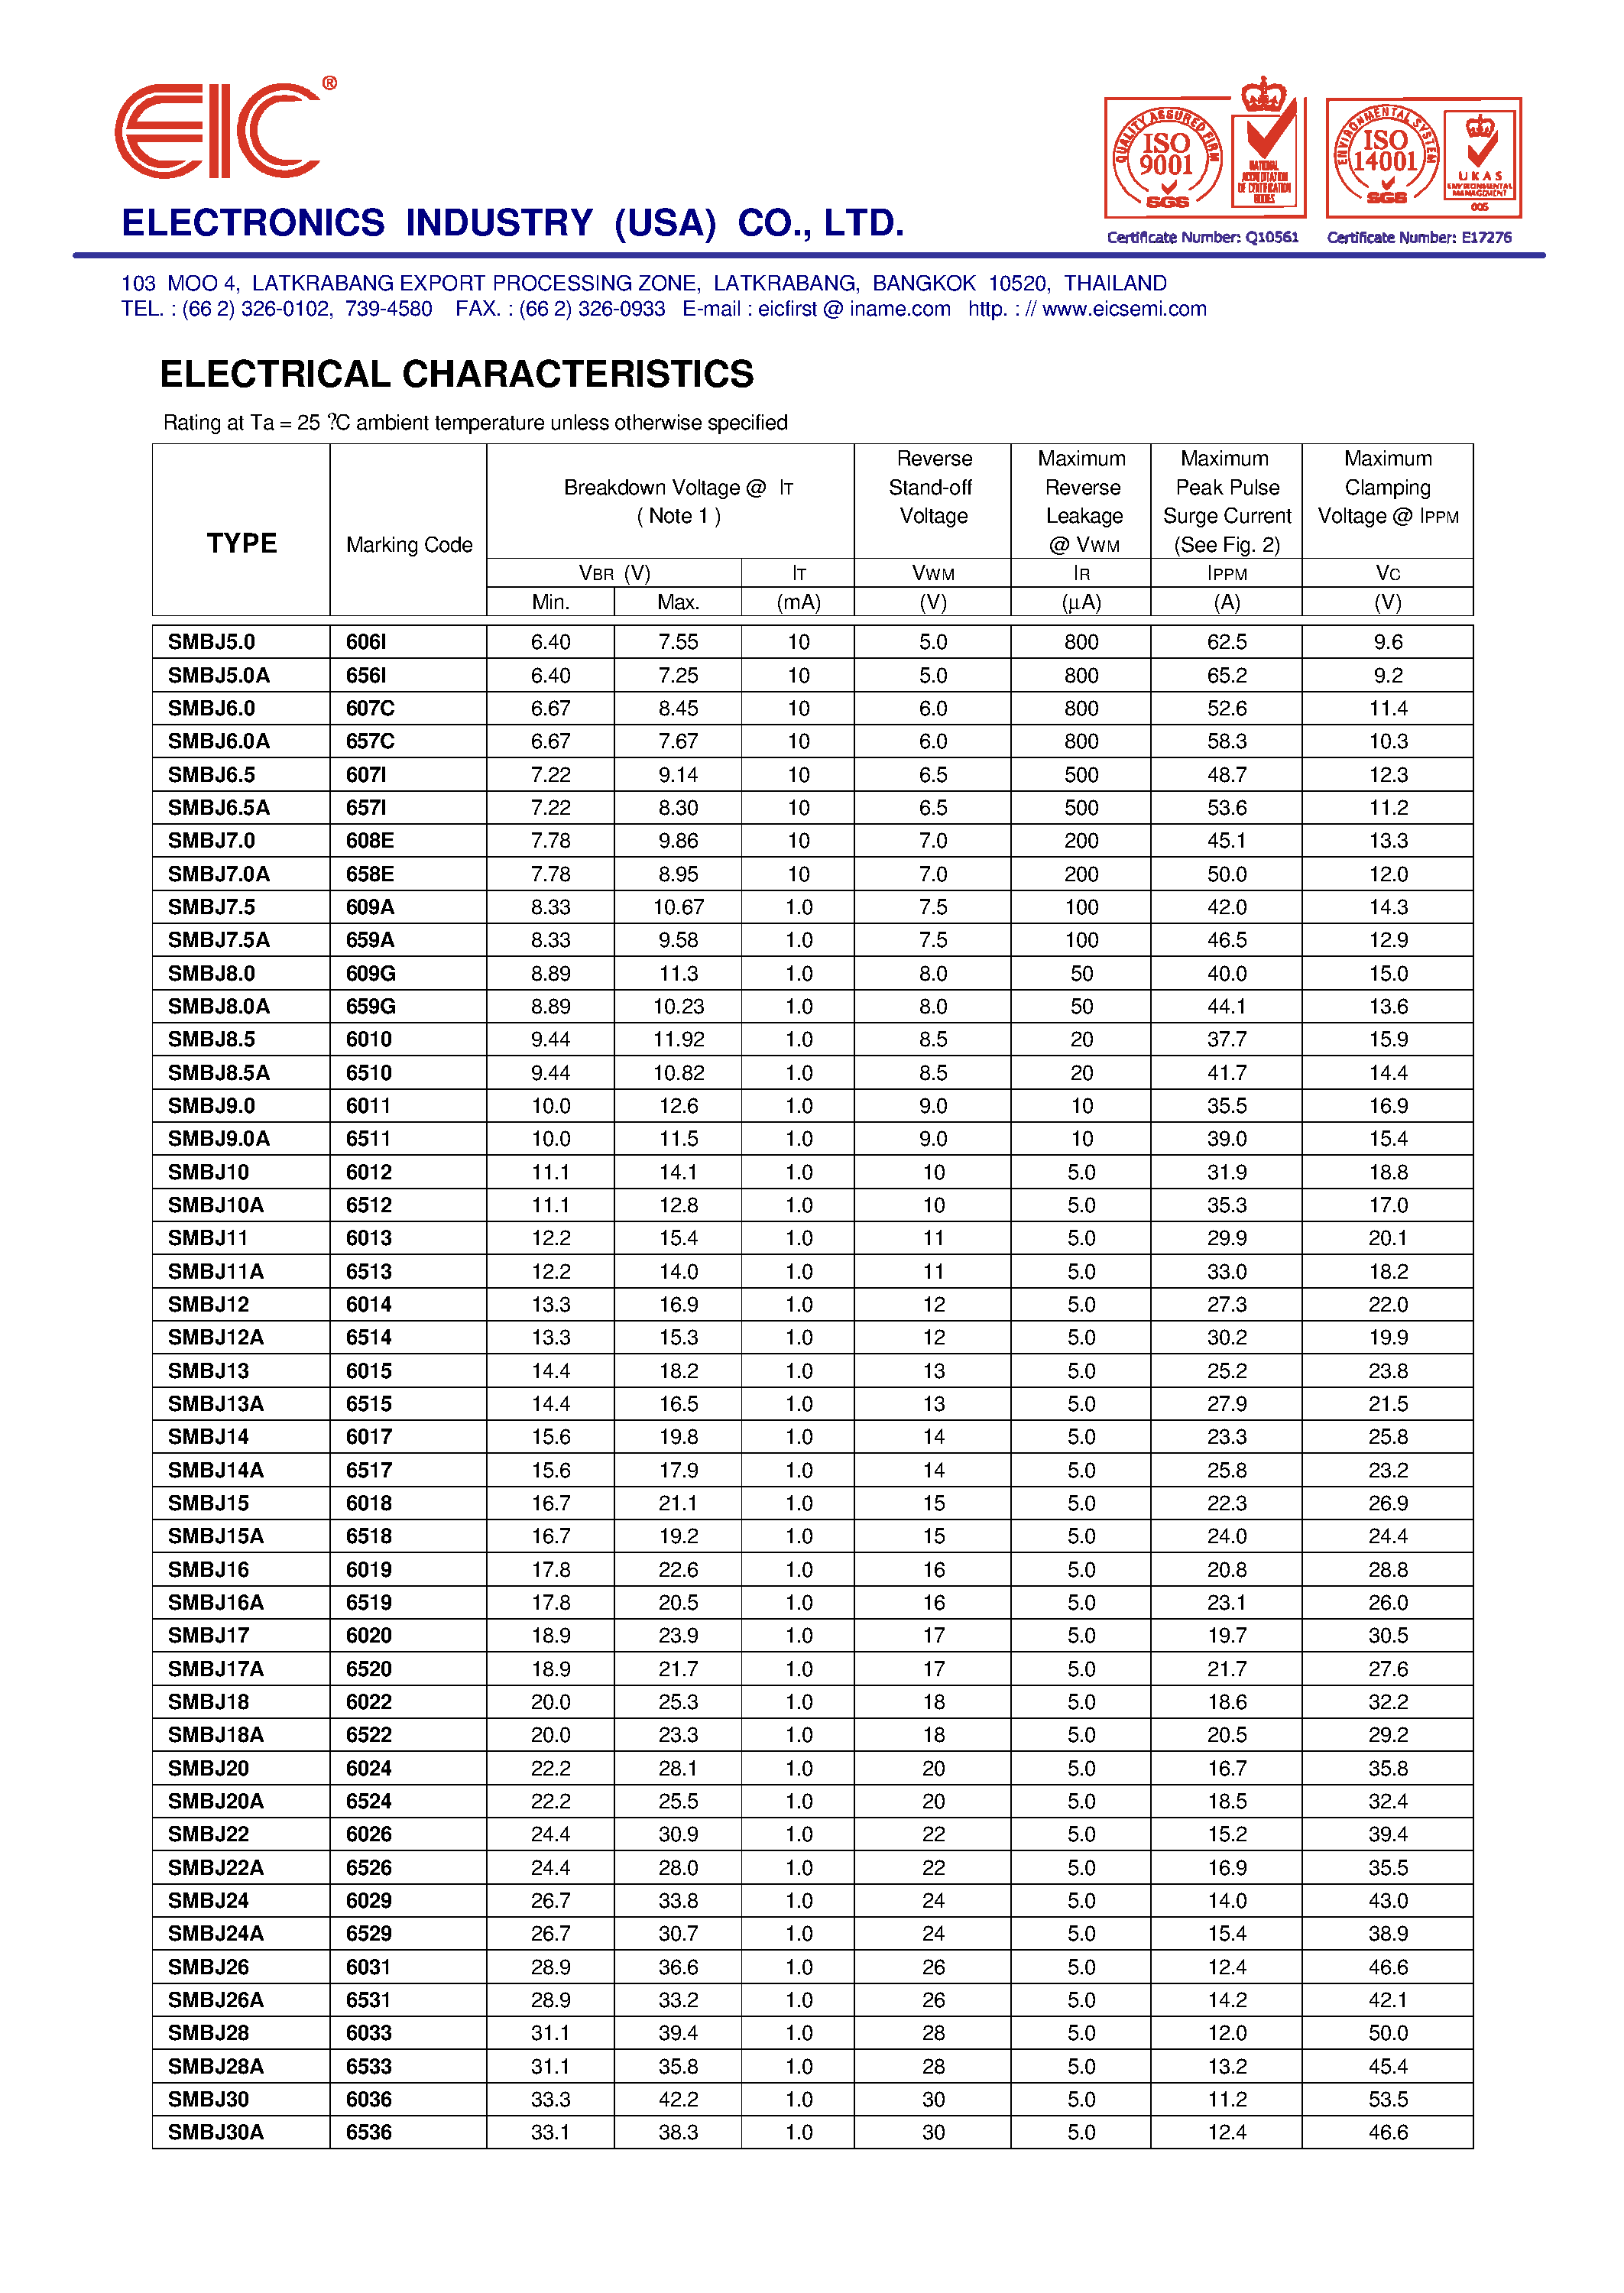 Datasheet SMBJ6V0A - Transient Voltage Suppressors SMBJ5V0(C)A - SMBJ170(C)A page 2